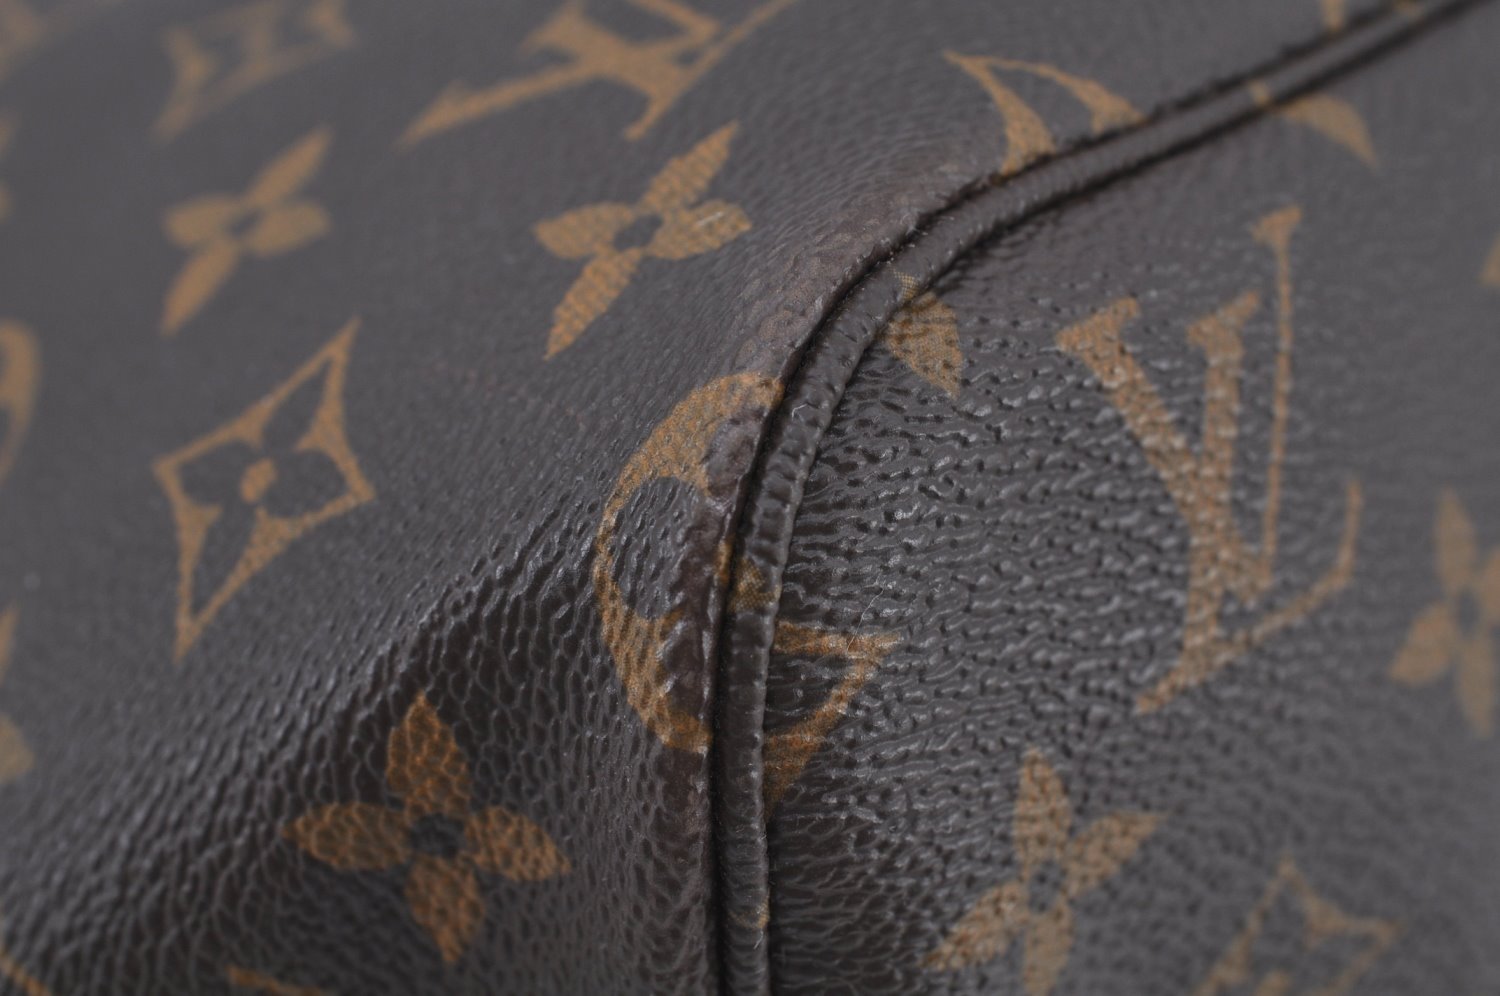 Authentic Louis Vuitton Mon Monogram Neverfull GM Shoulder Tote Bag LV K9221